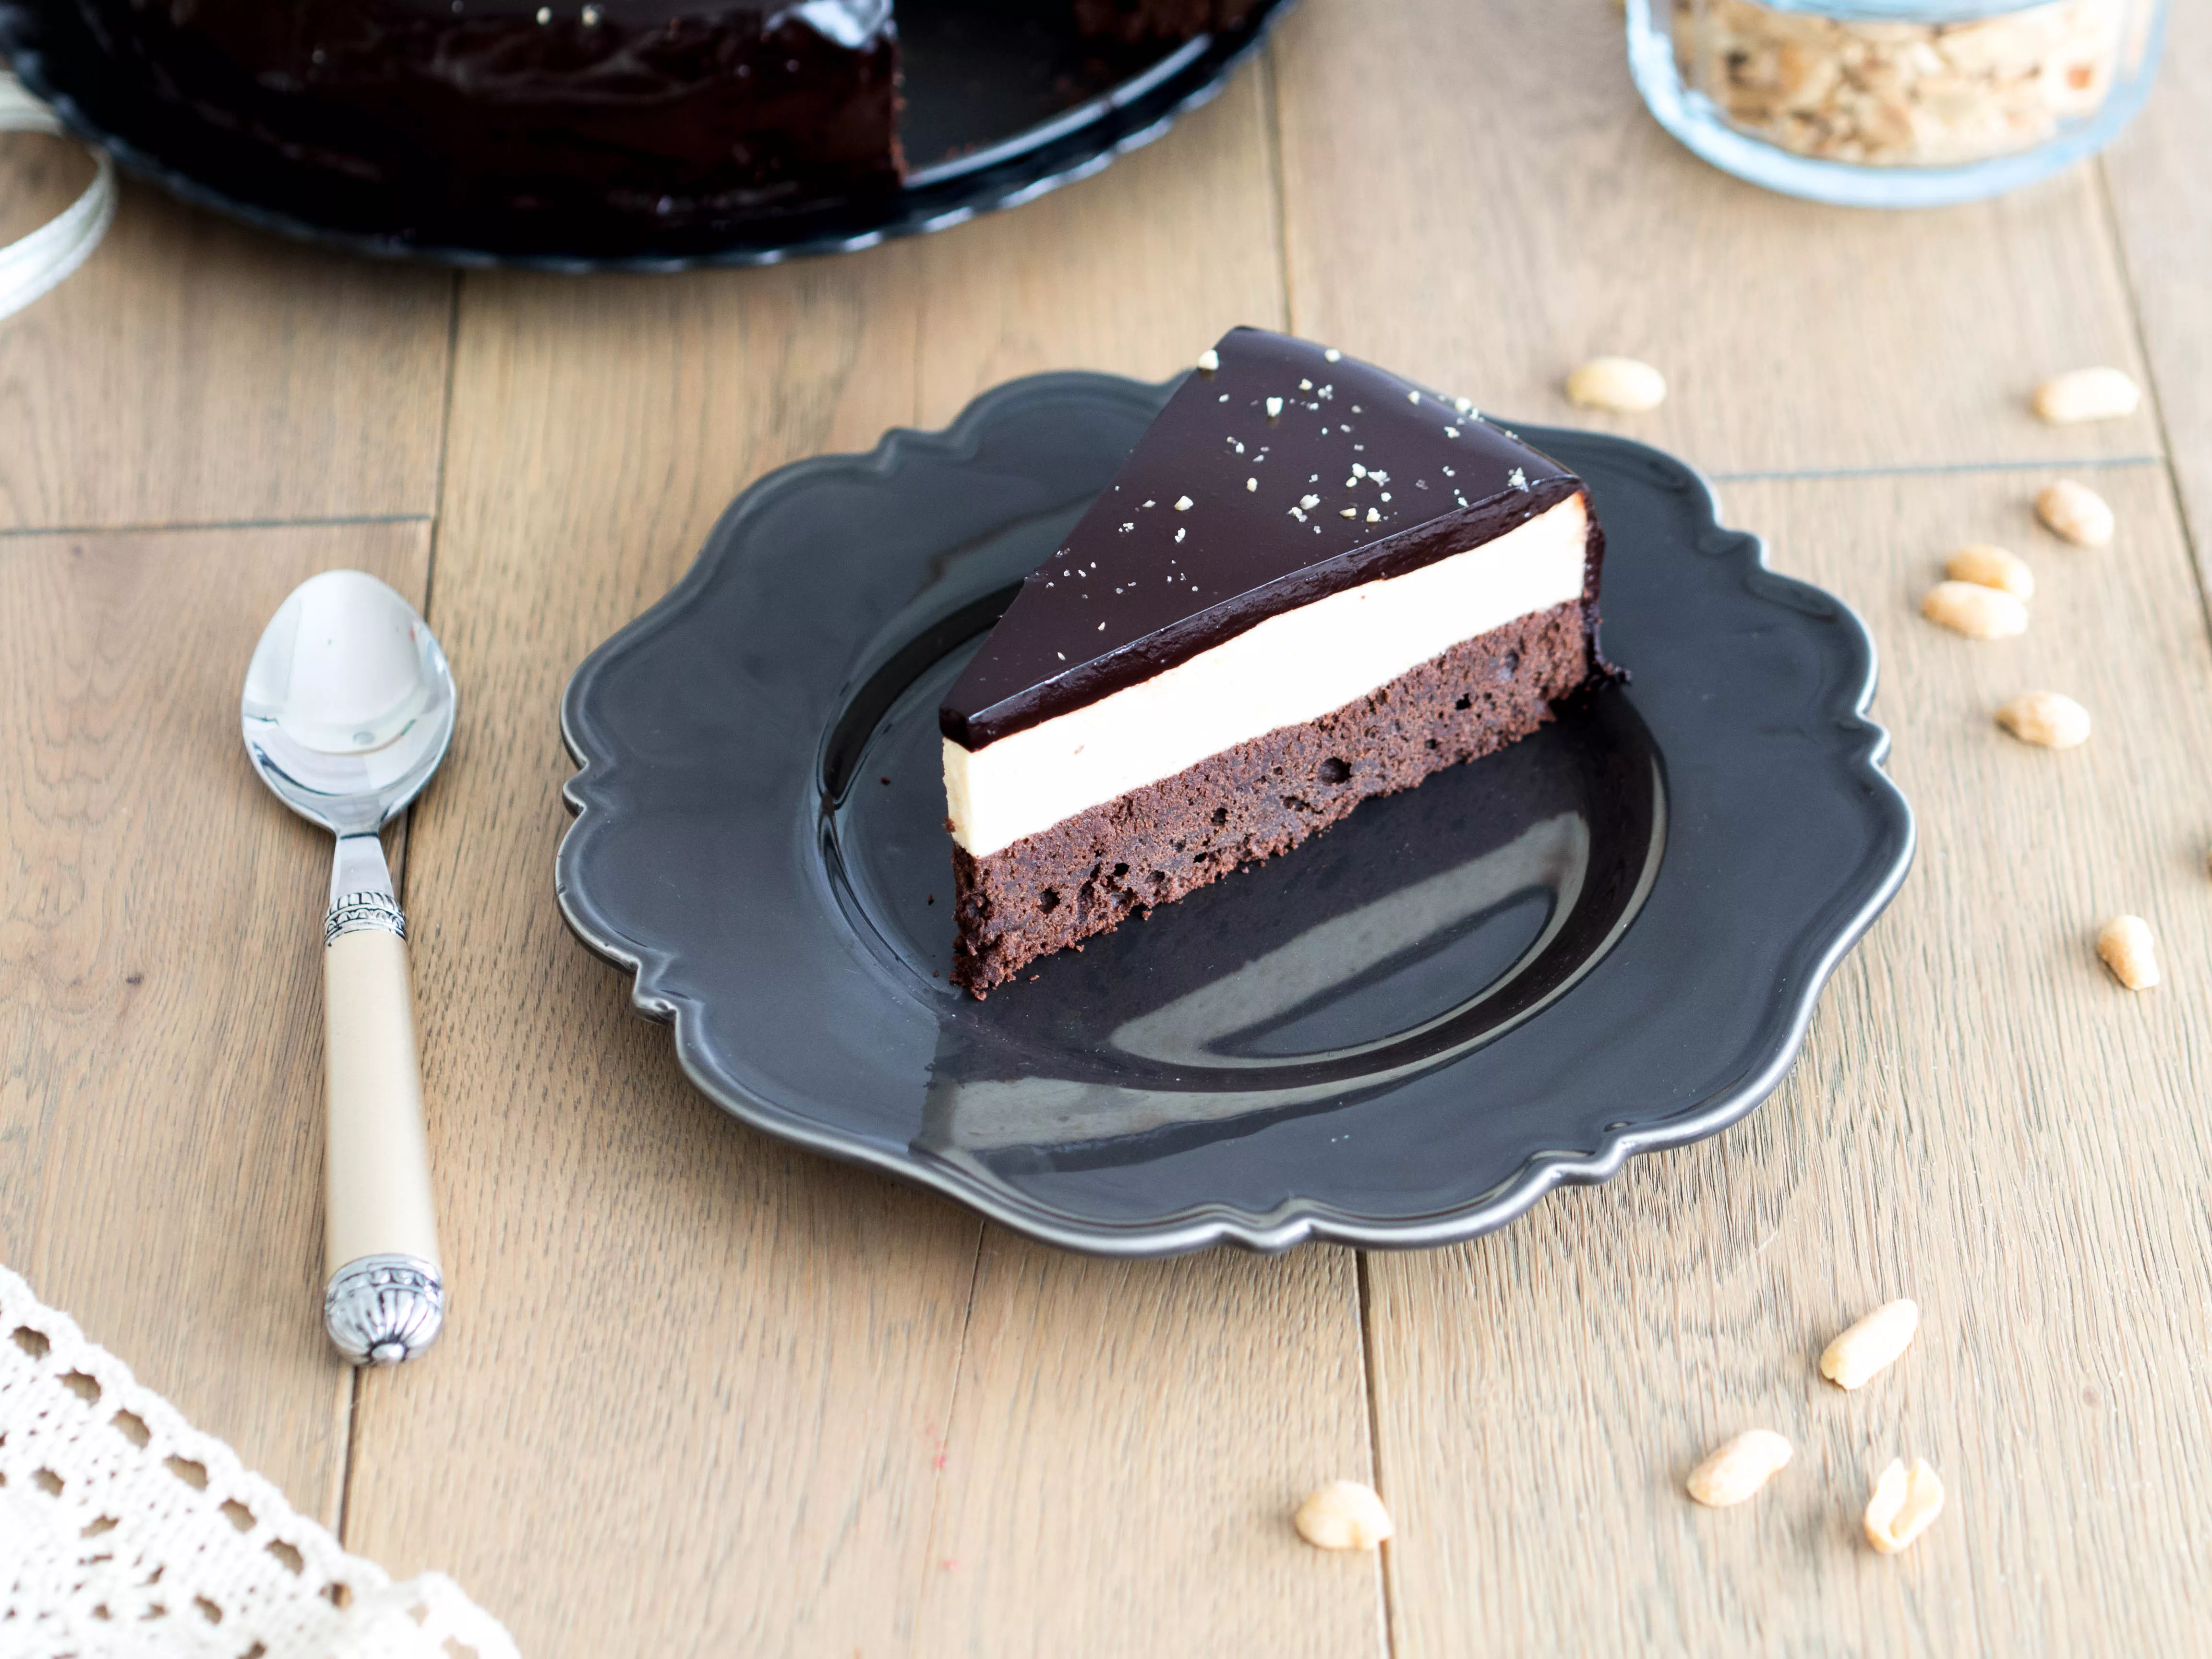 kawałek tortu czekoladowego na czekoladowym spodzie, z musem z masła orzechowego i czekoladową polewą lustrzaną, posypanego posiekanymi orzeszkami ziemnymi - Wszystkiego Słodkiego